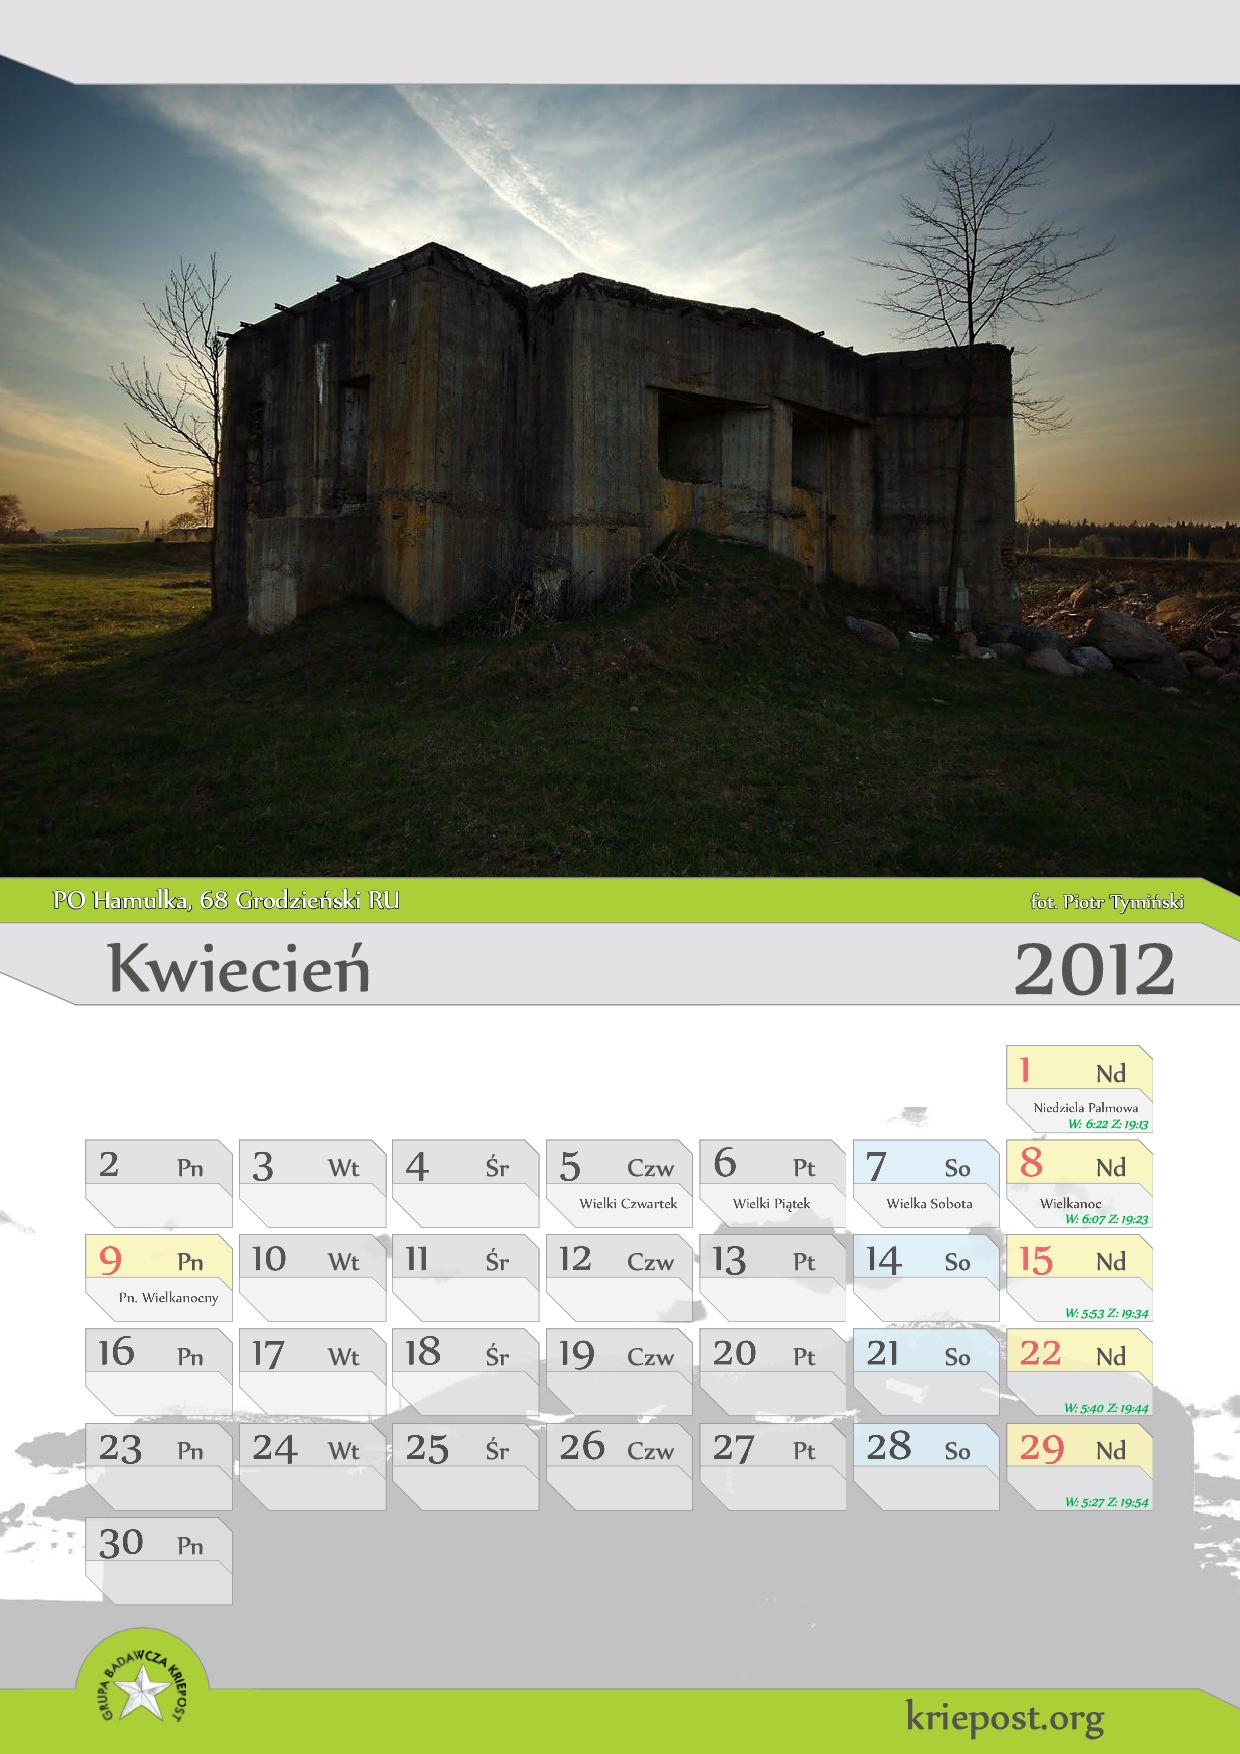 GB Kriepost kalendarz 2012 kwiecień